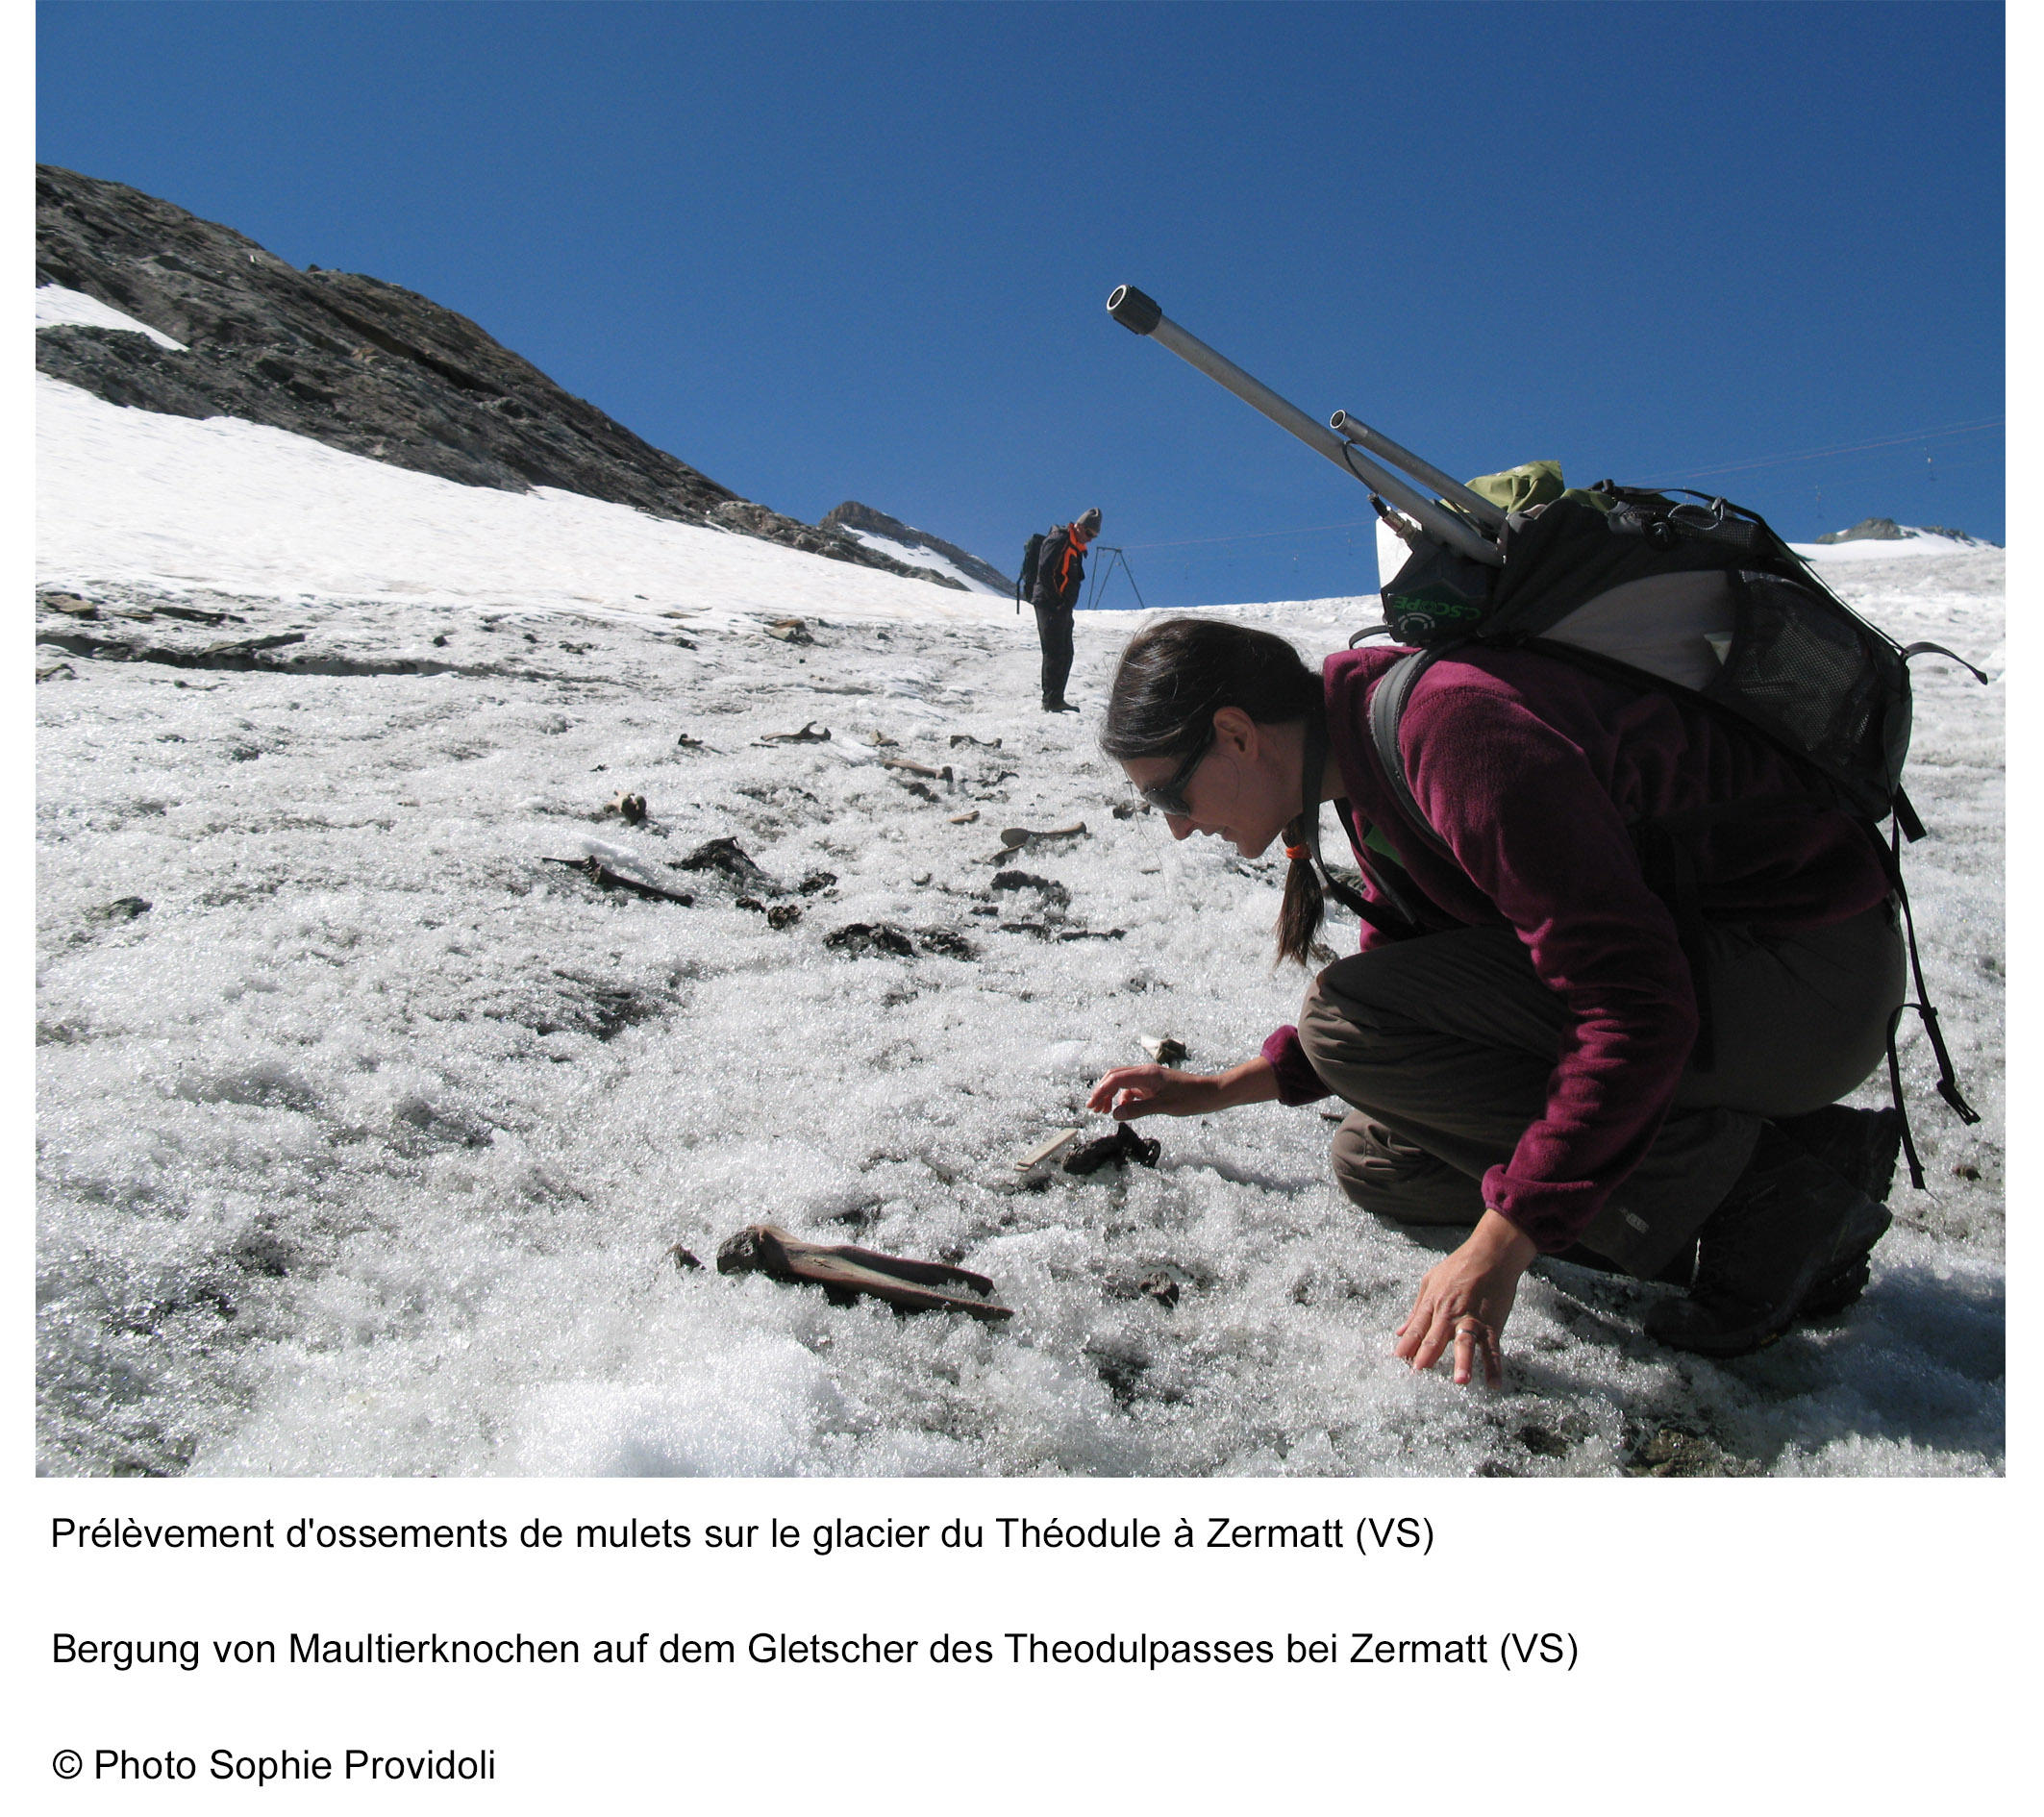 Archeologist investigating bones found on Théodule Pass, near Zermatt